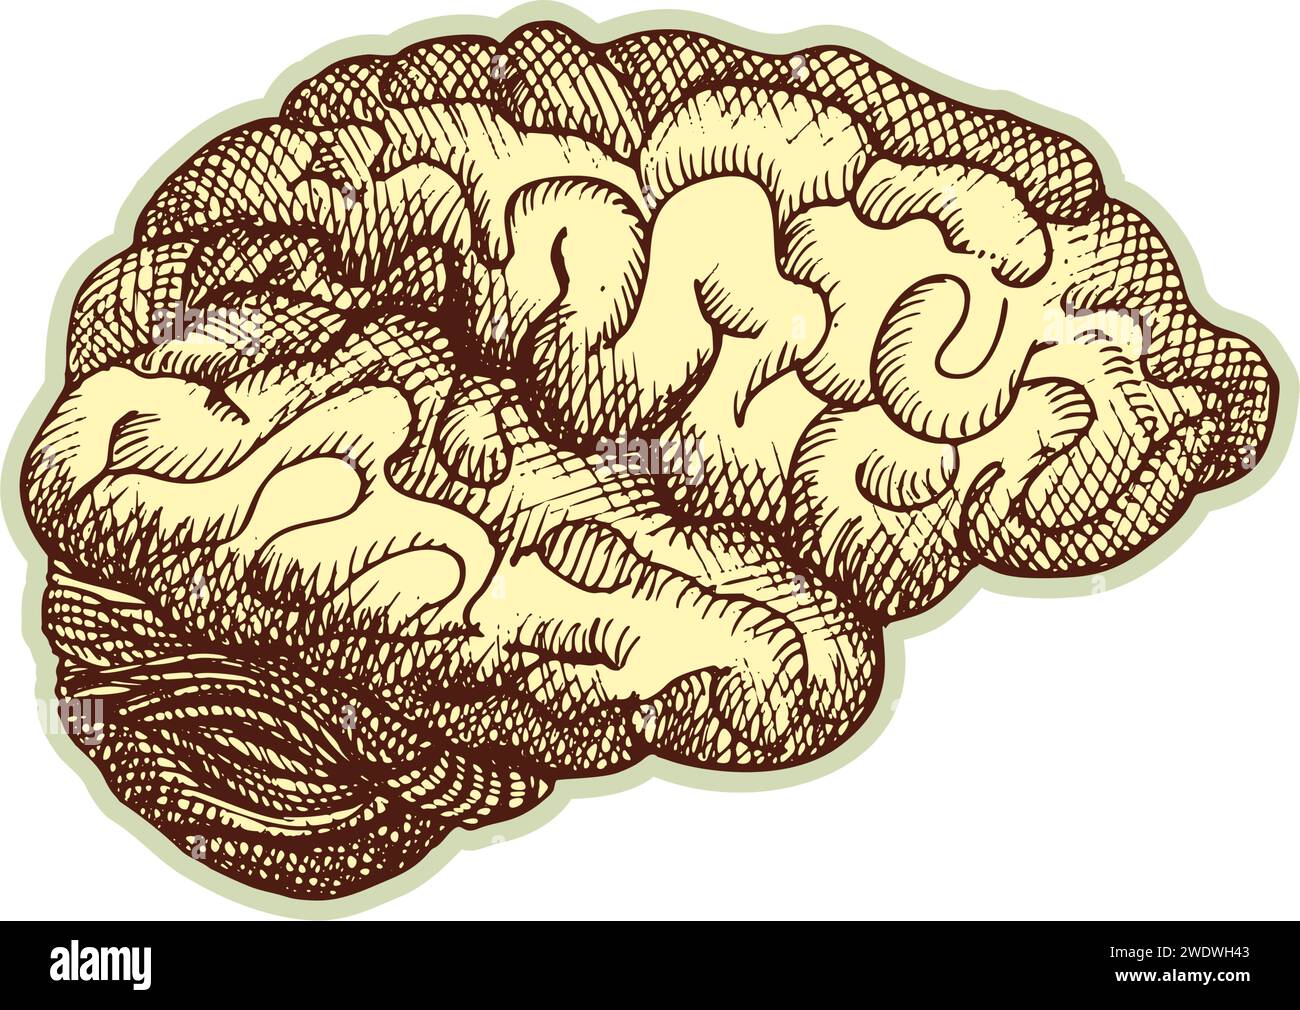 Autocollant du cerveau humain. Vintage anatomie gravure organe esquisse isolé sur fond blanc. Bonne idée pour la conception rétro de l'affiche de médecine à la main dessinée Illustration de Vecteur